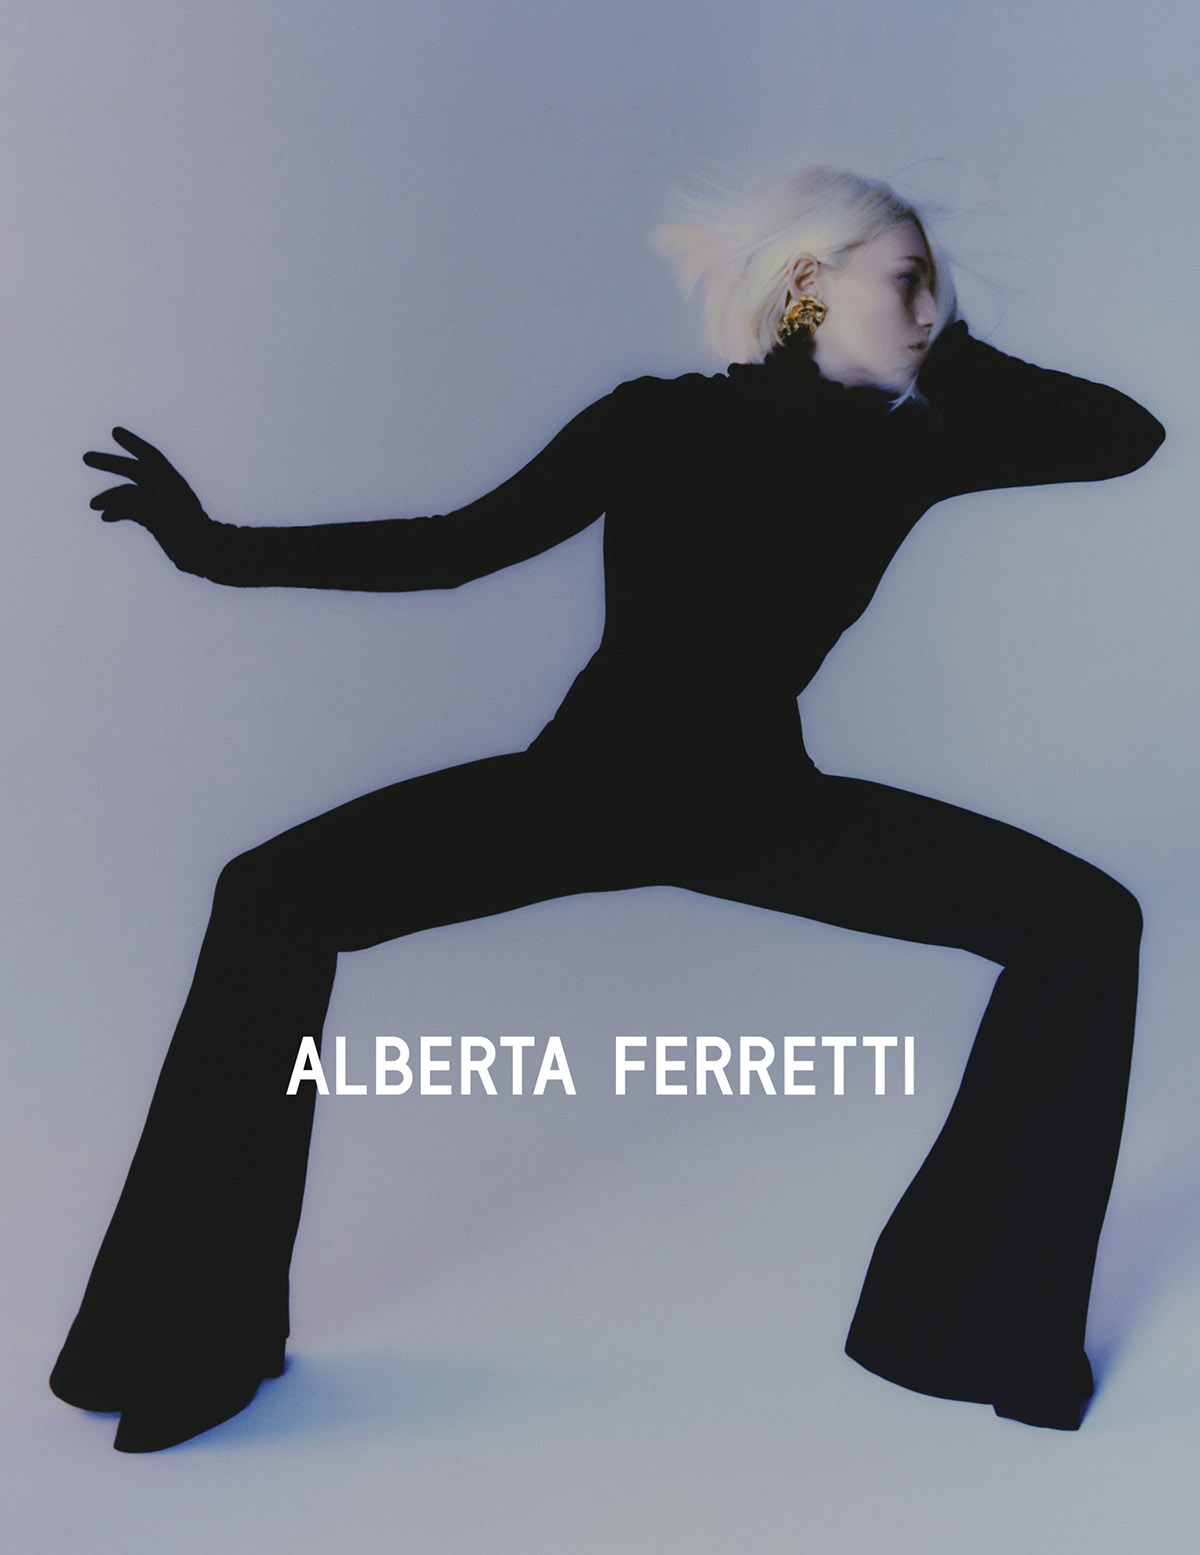 Alberta Ferretti Fall Winter 2021 Campaign